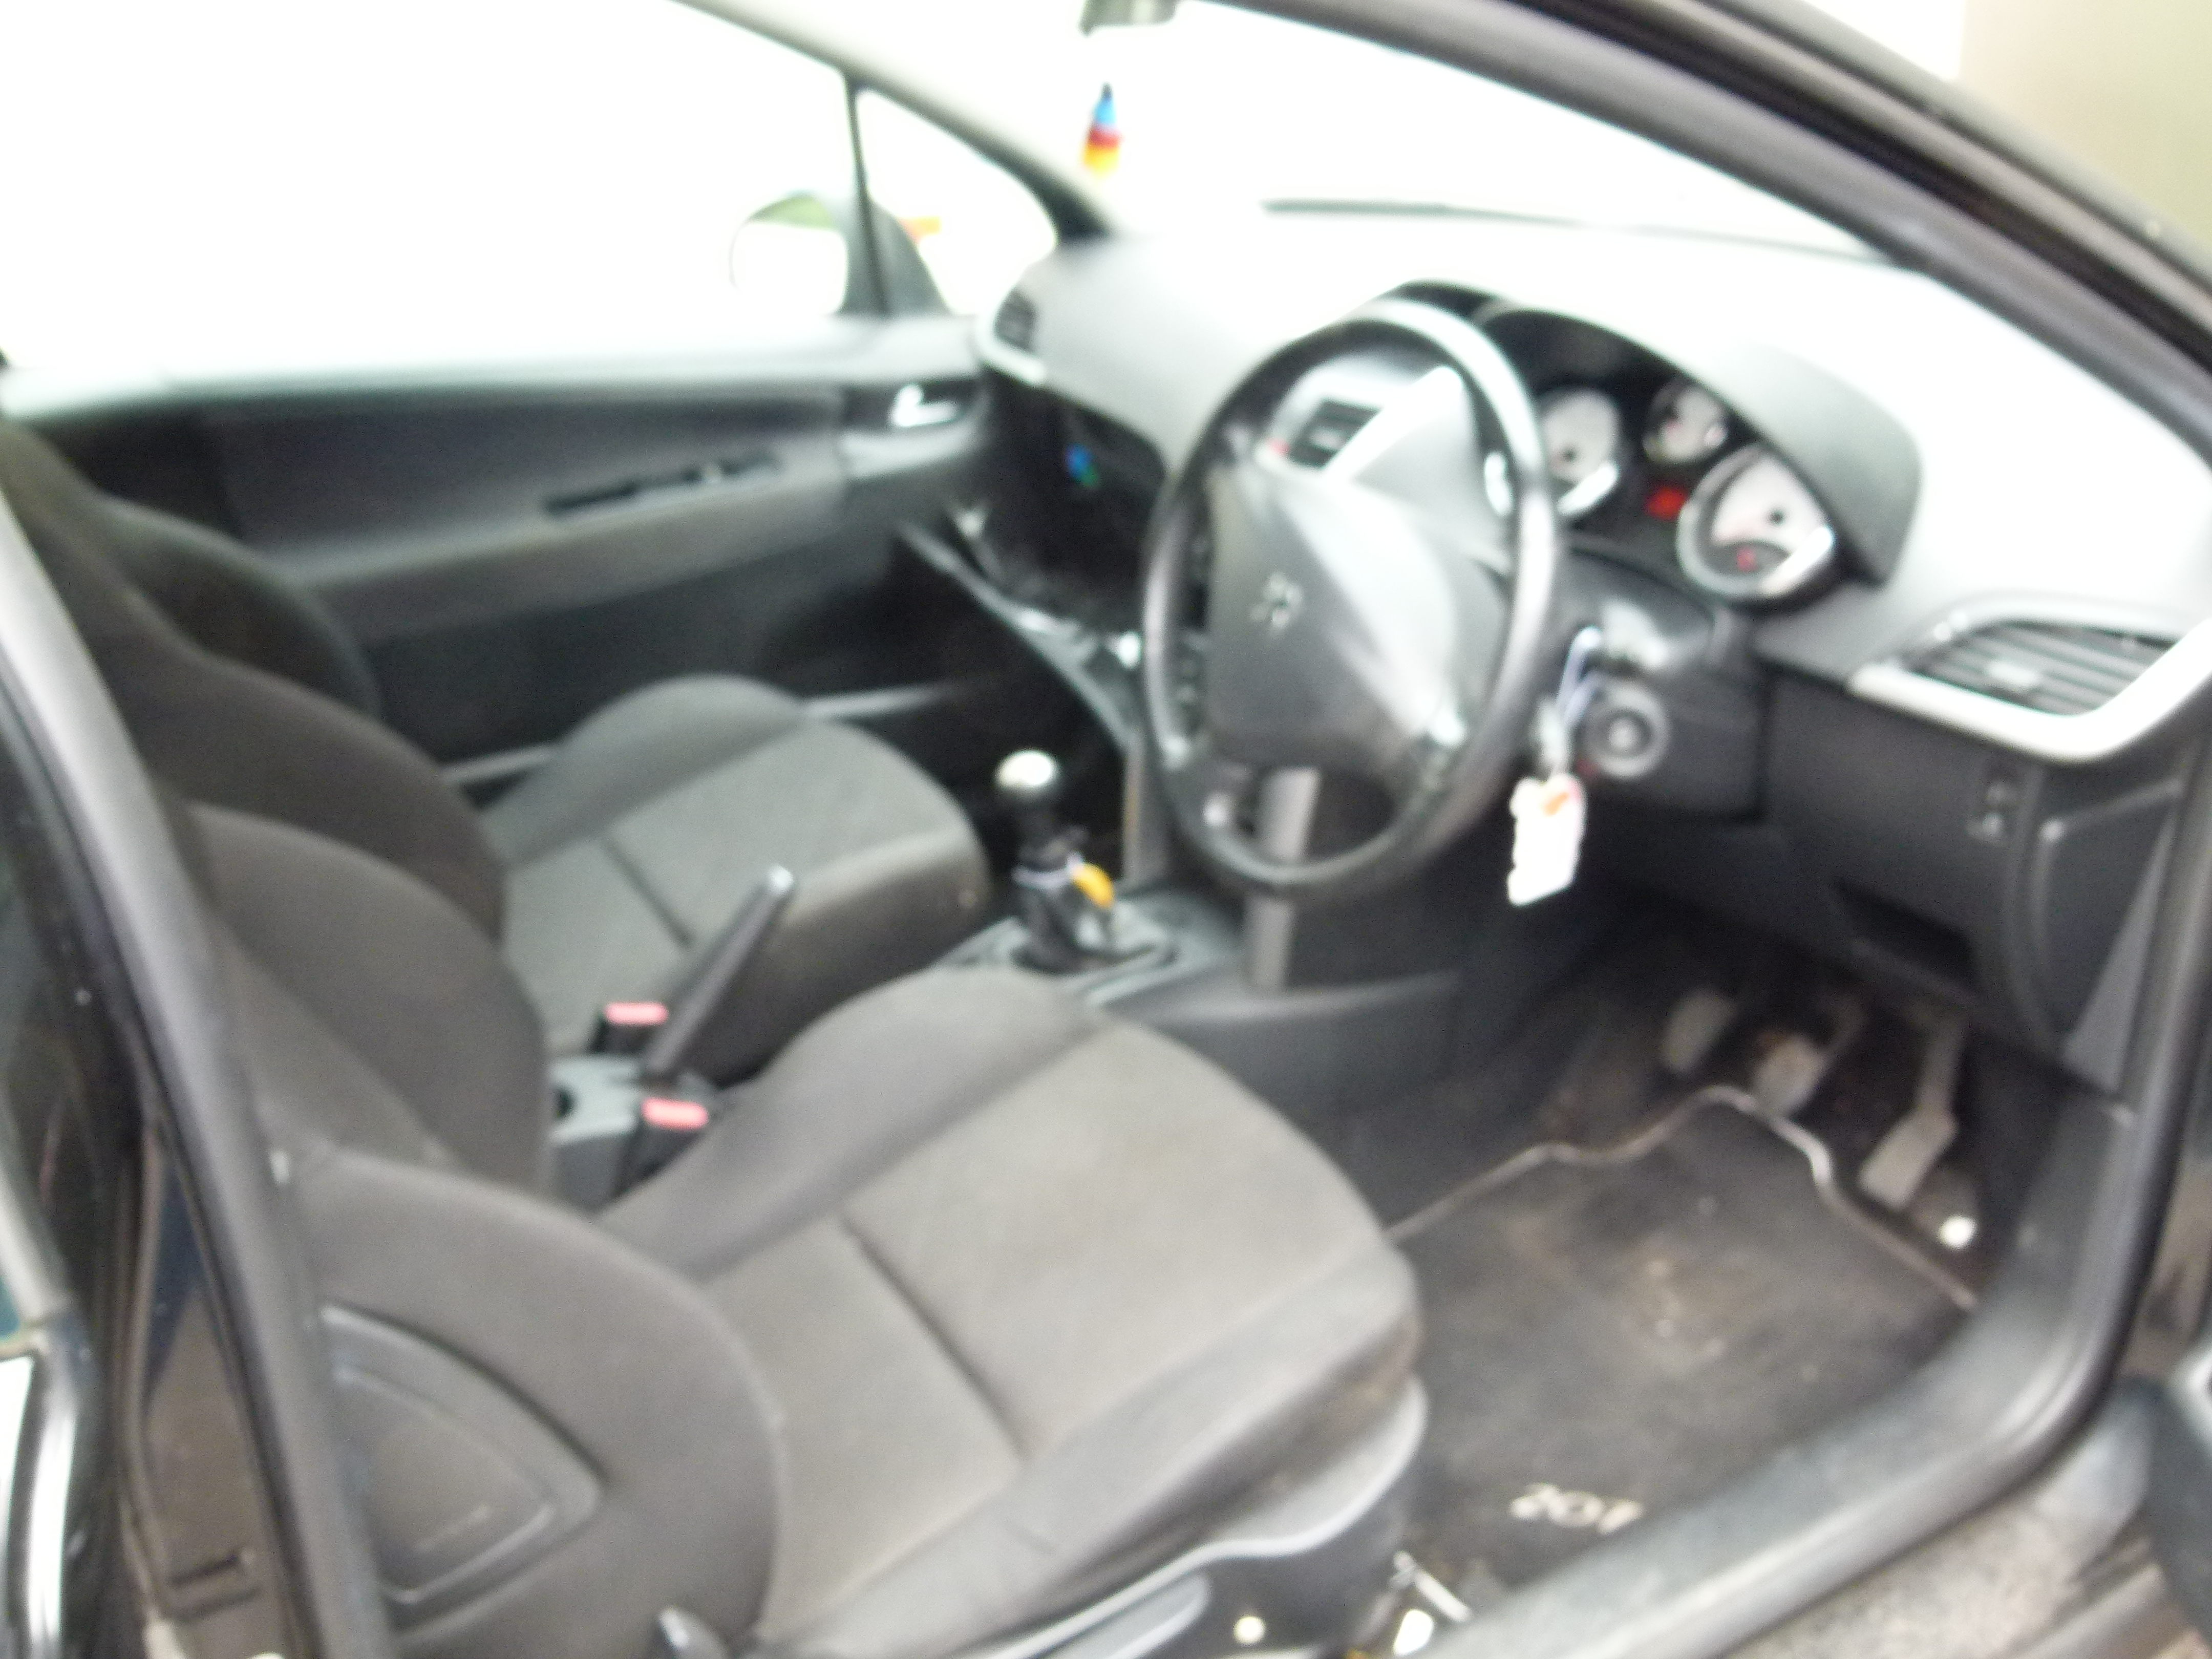 Black Peugeot 207, two door hatchback, manual gear box, no keys or log book. - Image 3 of 4